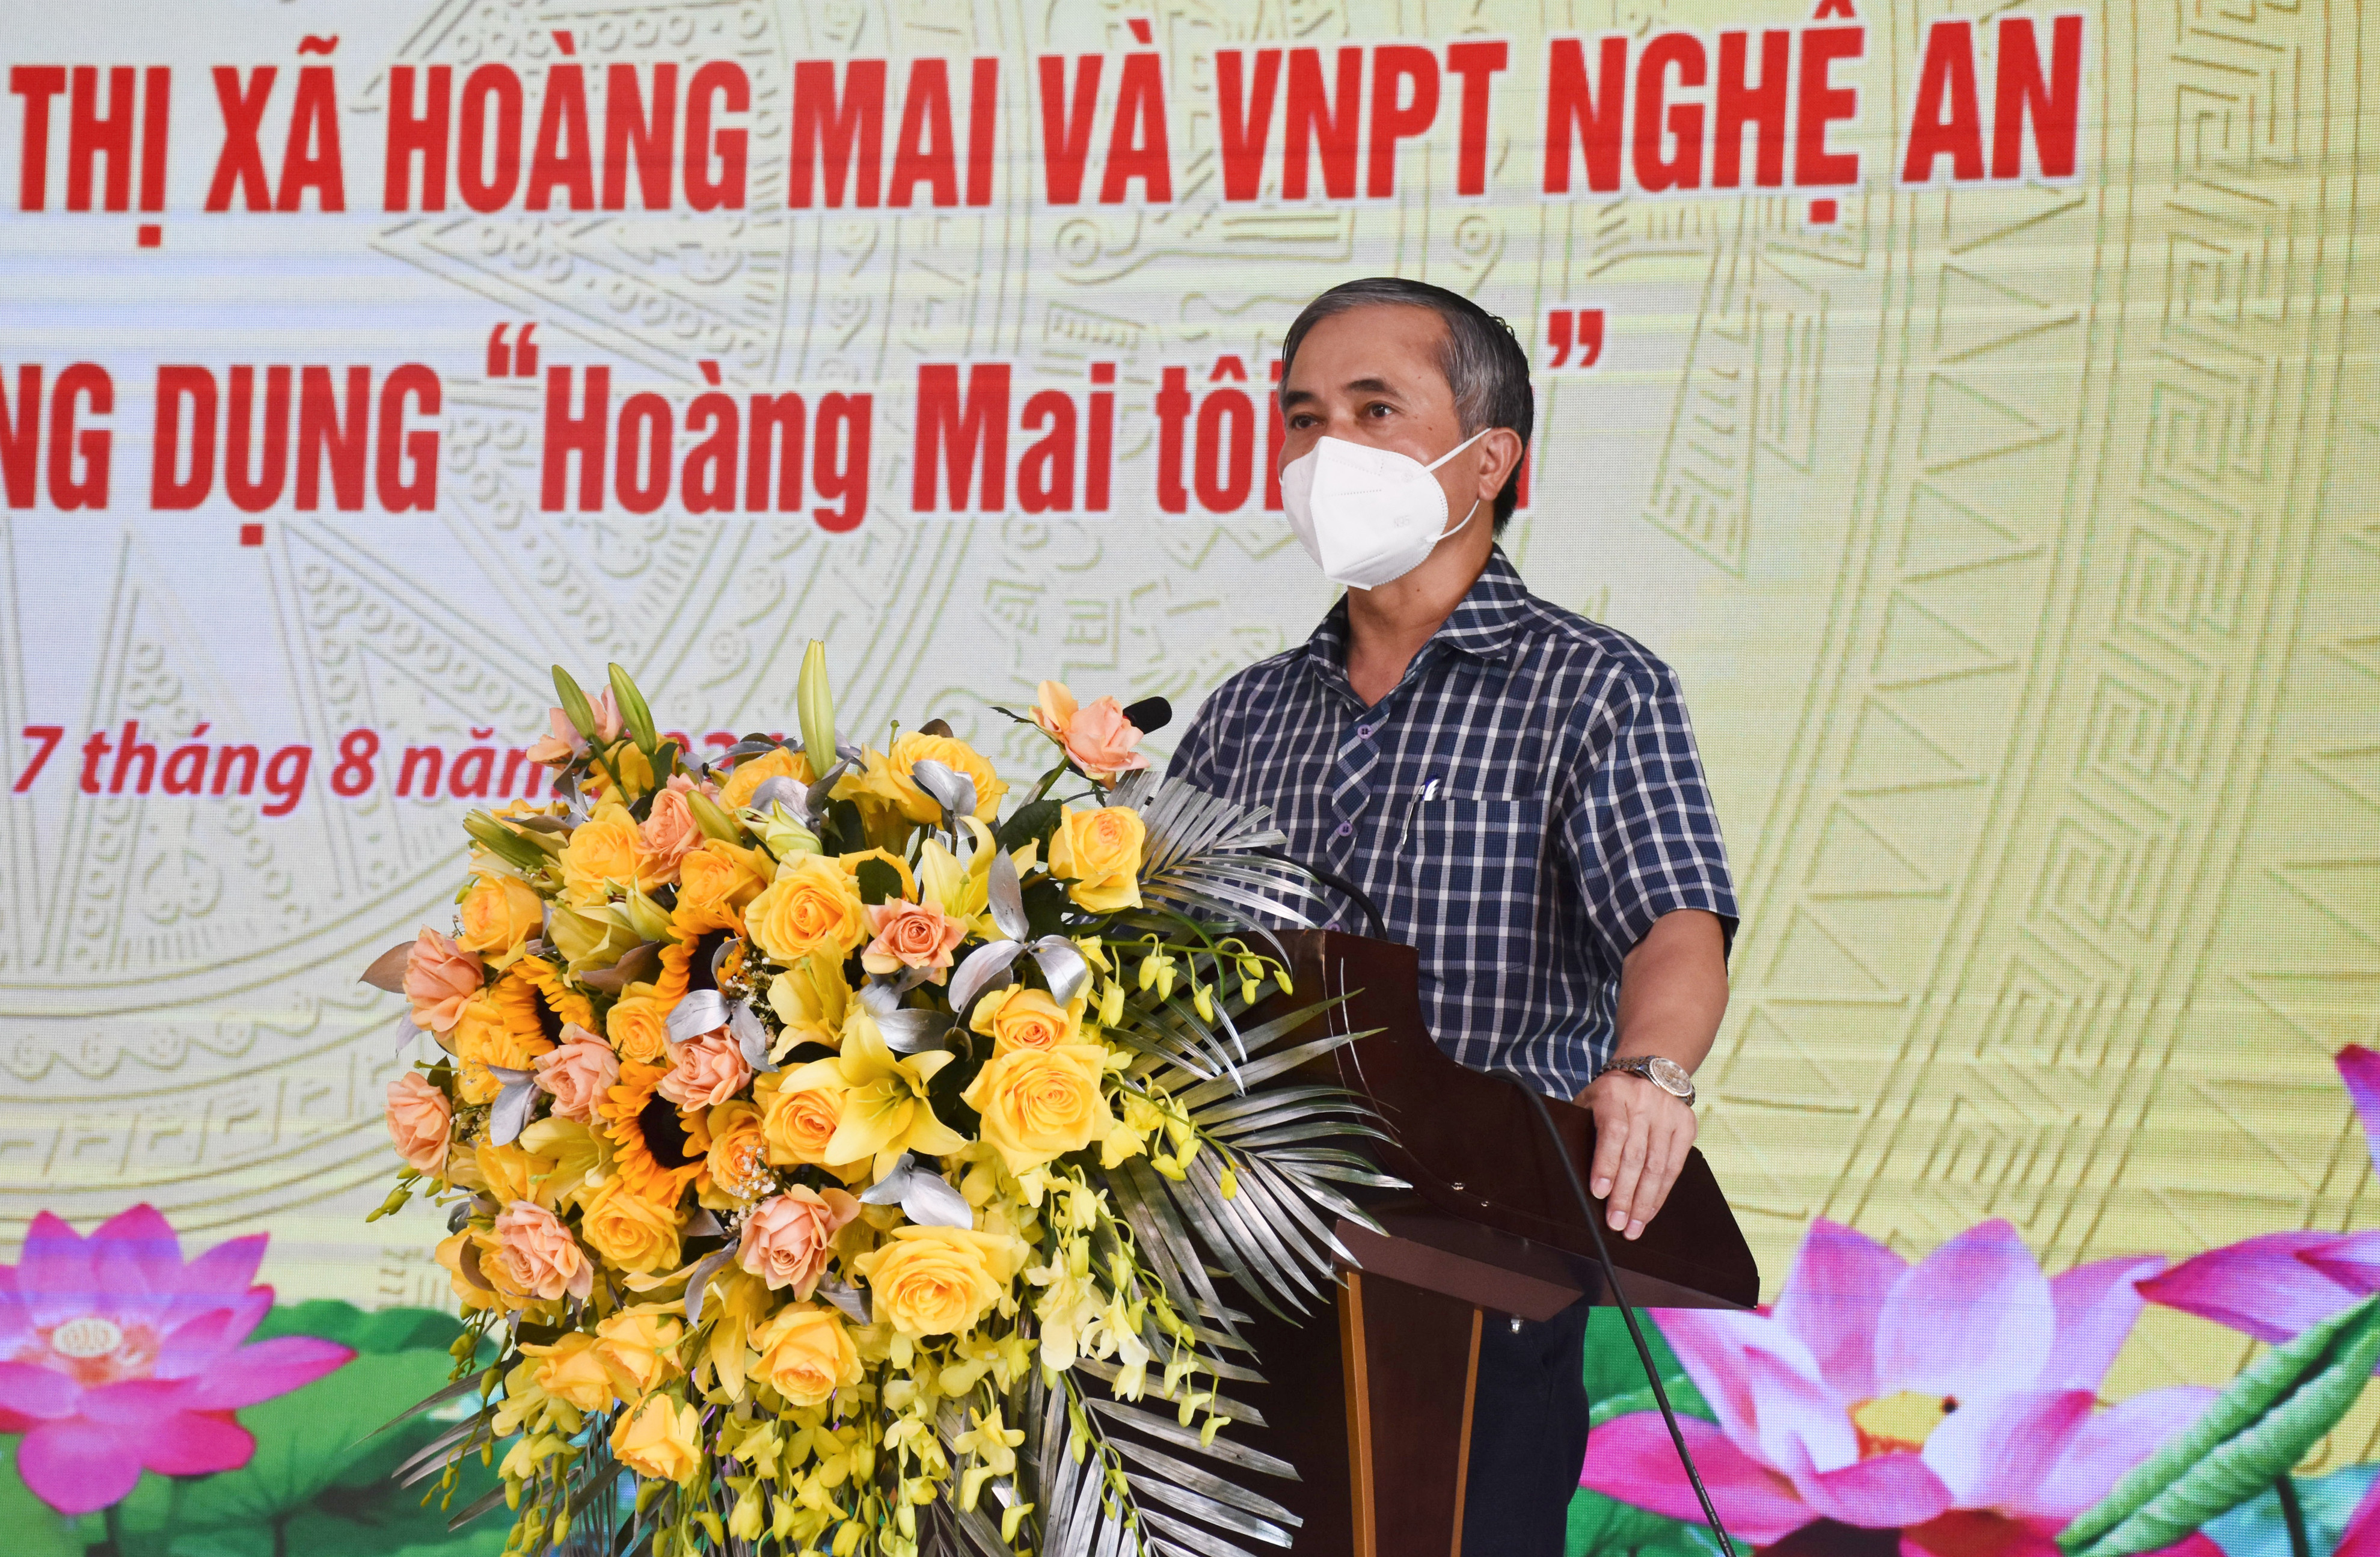 Phó Chủ tịch UBND tỉnh Lê Ngọc Hoa phát biểu tại buổi lễ. Ảnh: Thanh Lê